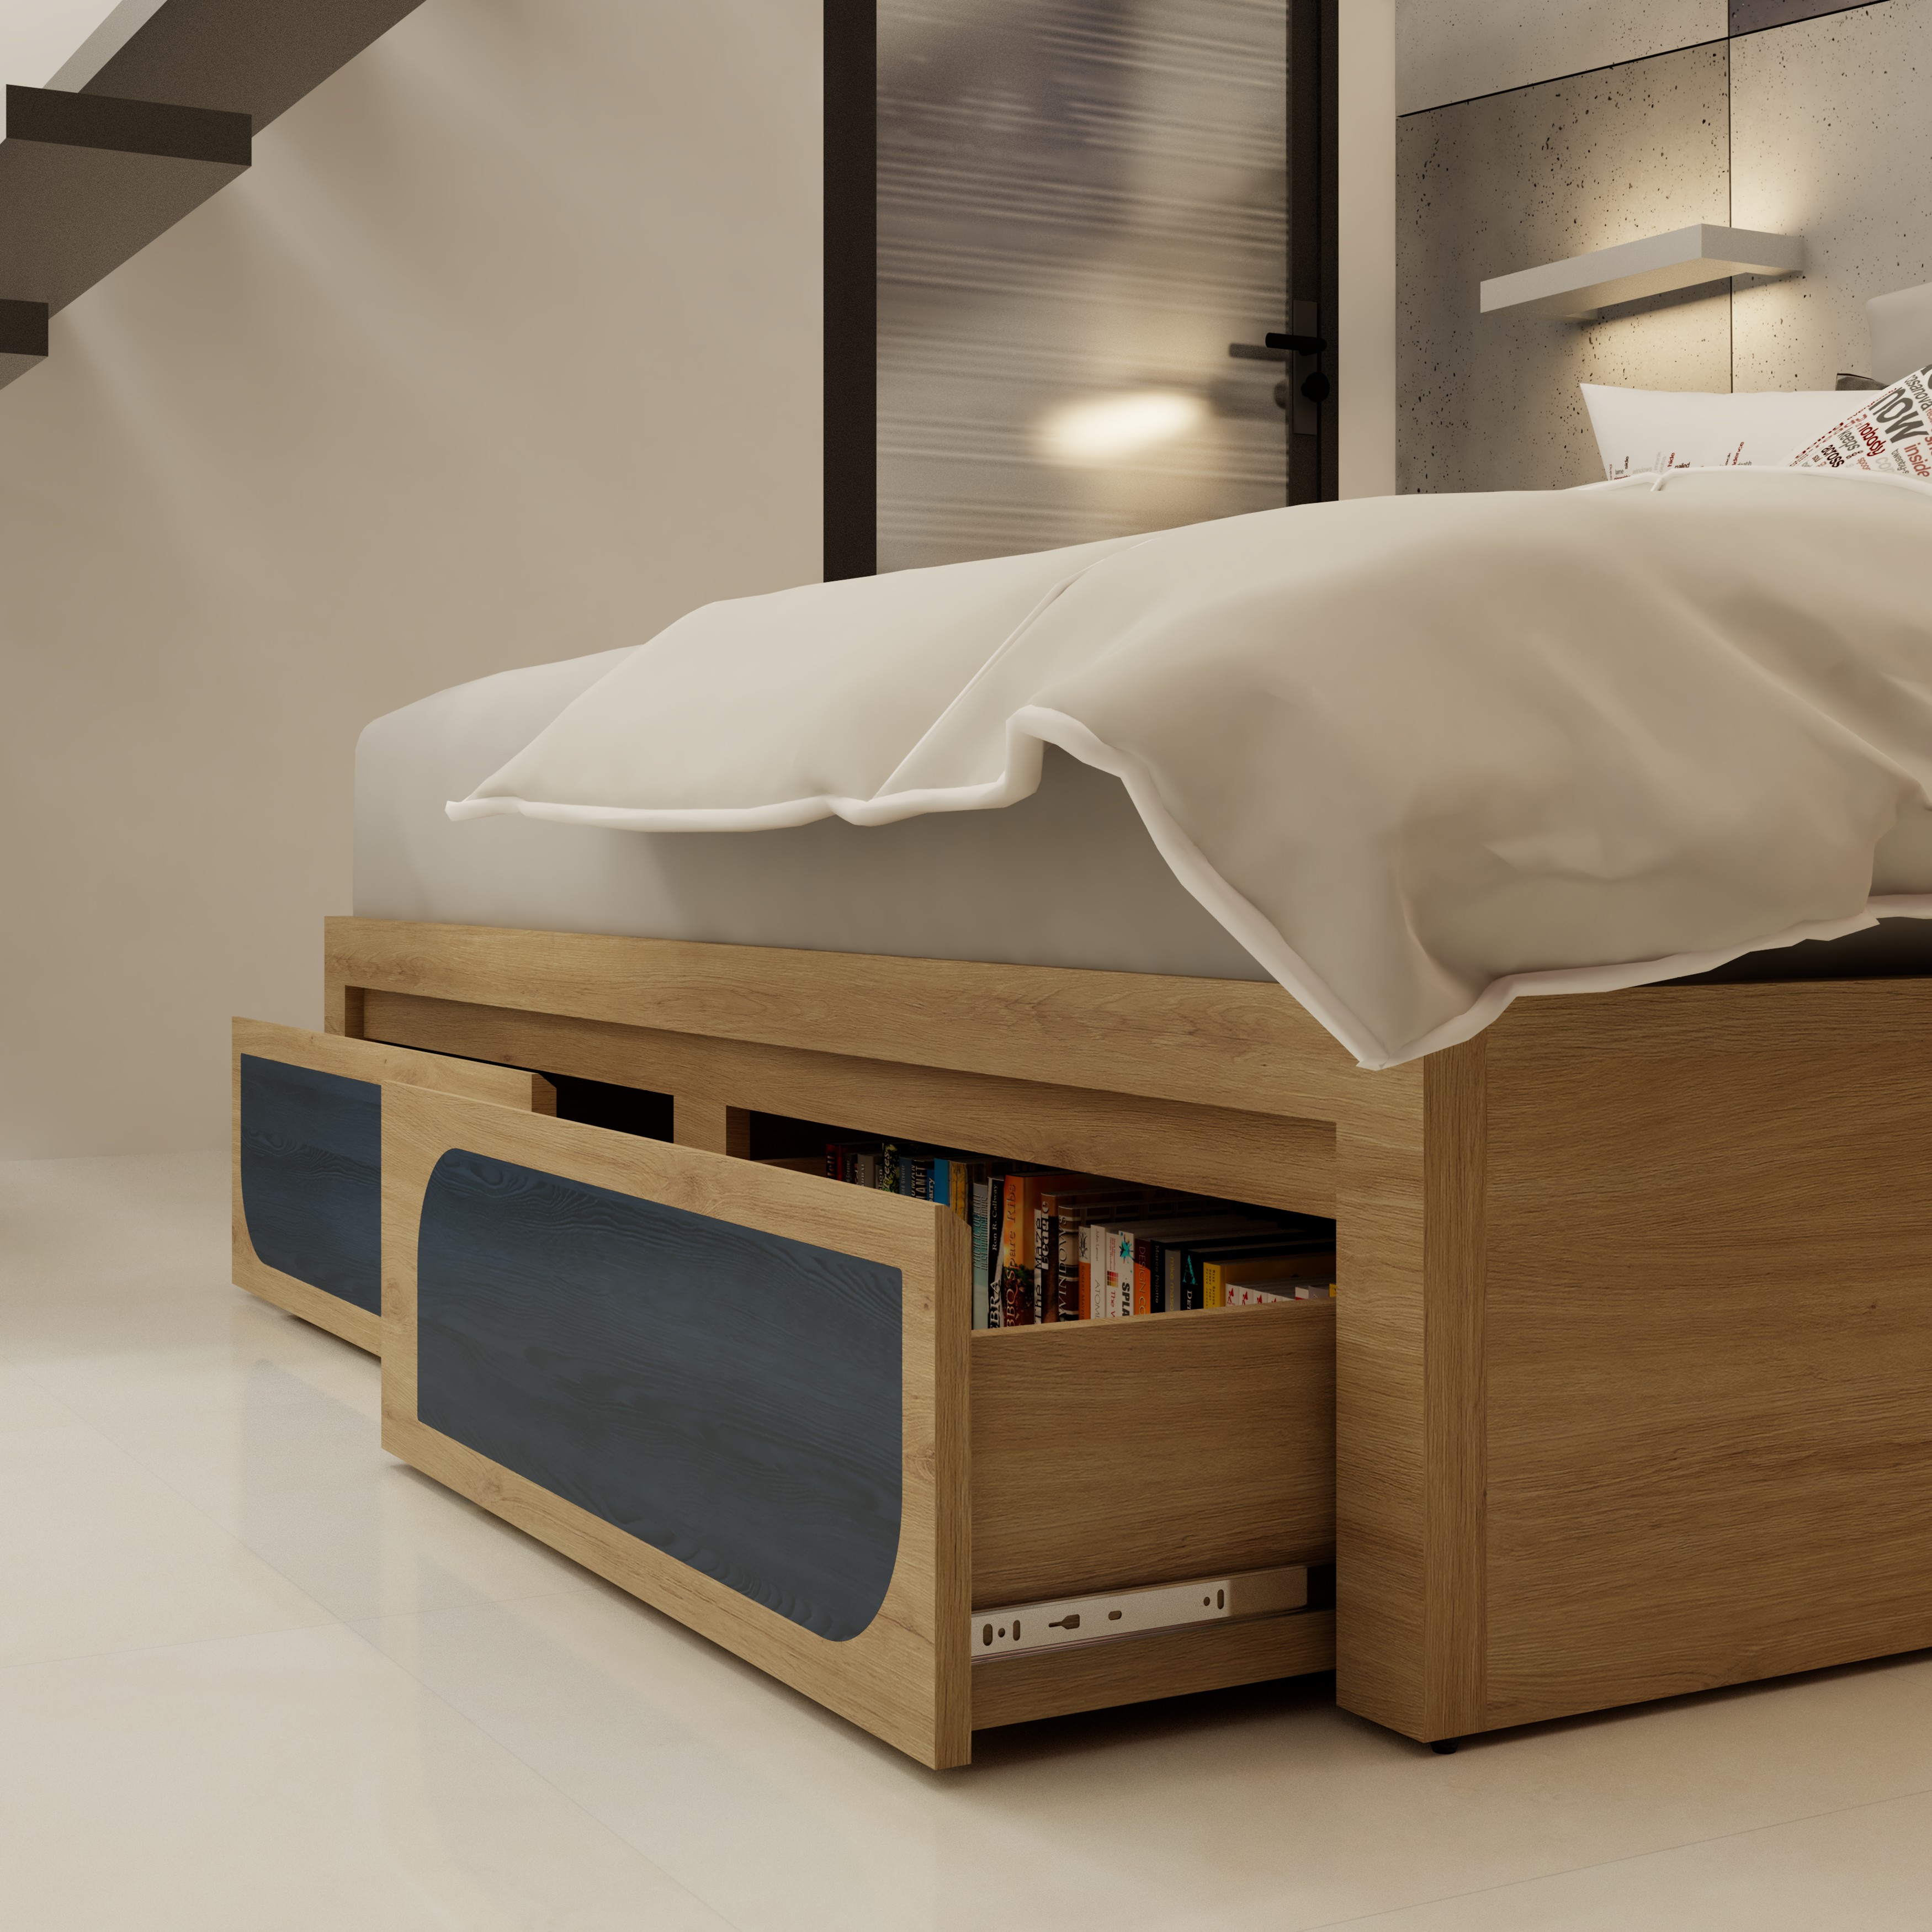 [Happy Home Furniture] BANA , Giường ngủ 2 ngăn kéo , 207cm x  32cm ( DxC), GNG_118, GNG_119, GNG_120, GNG_121